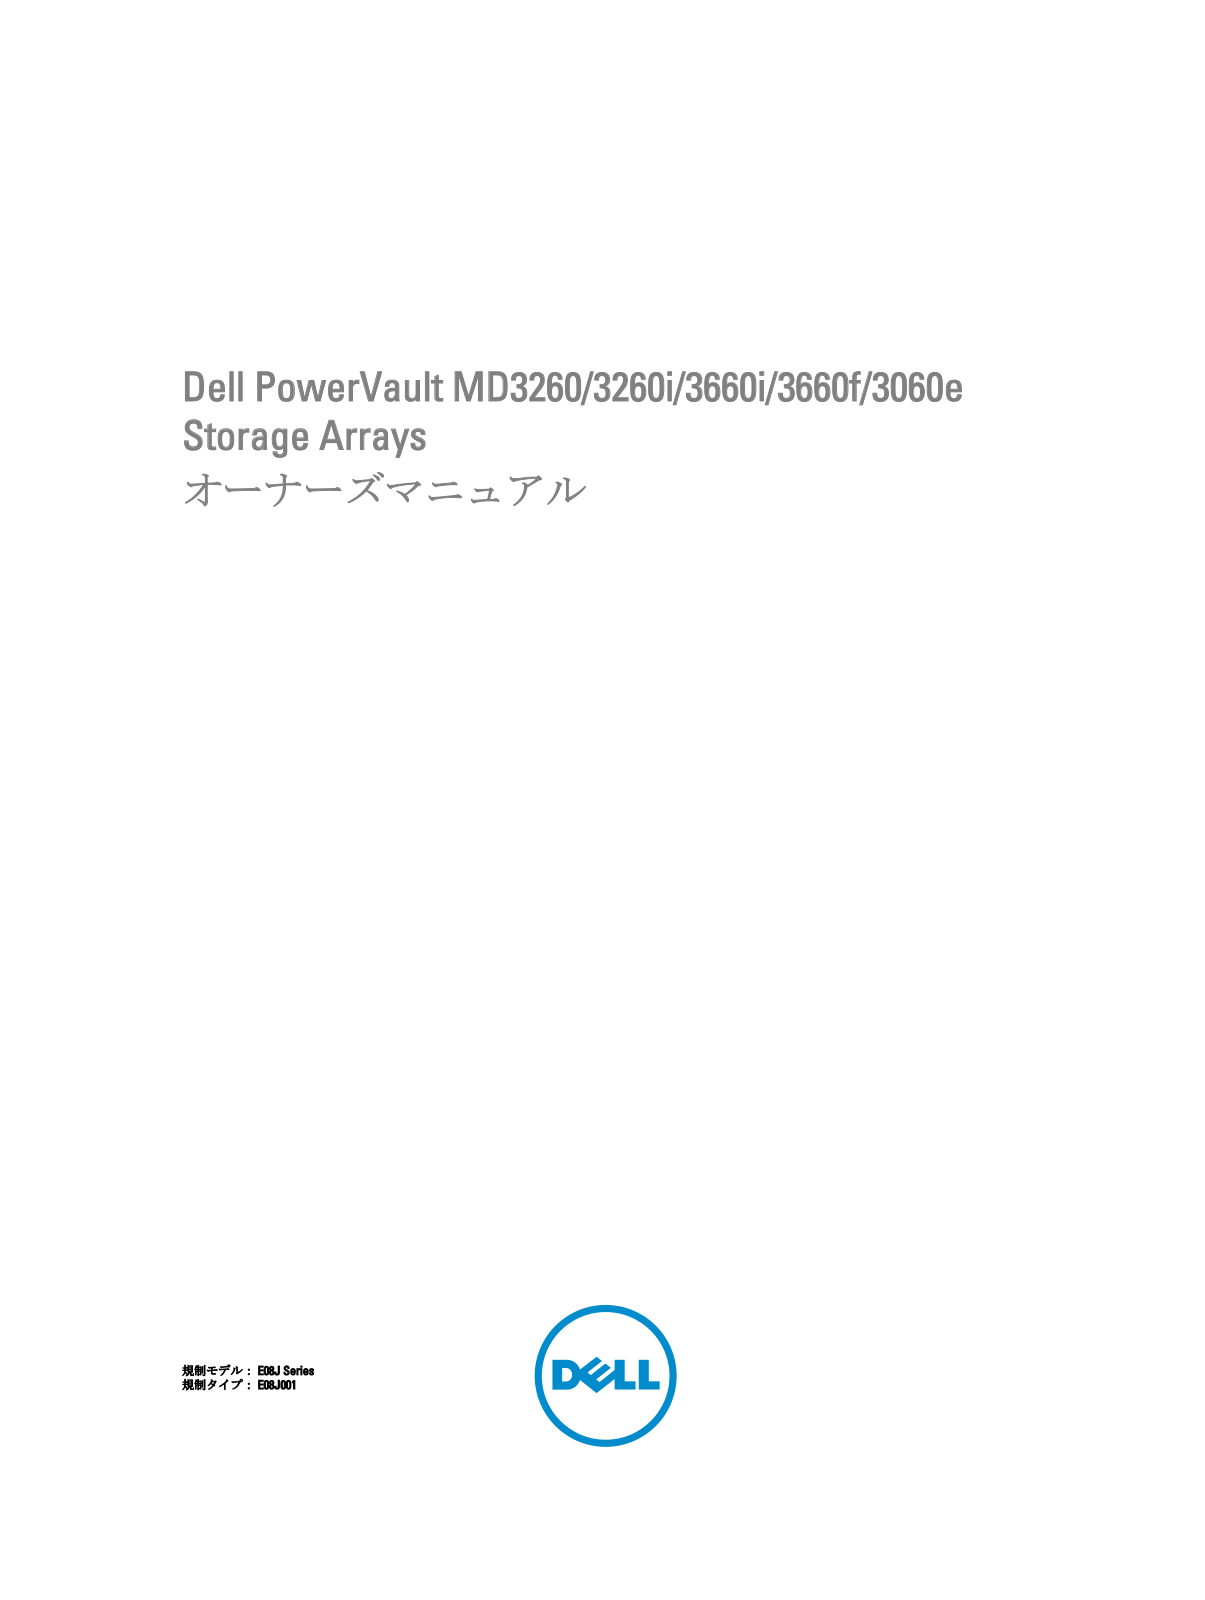 Dell MD3260, 3260i, 3660f, 3060e, 3660i User Manual